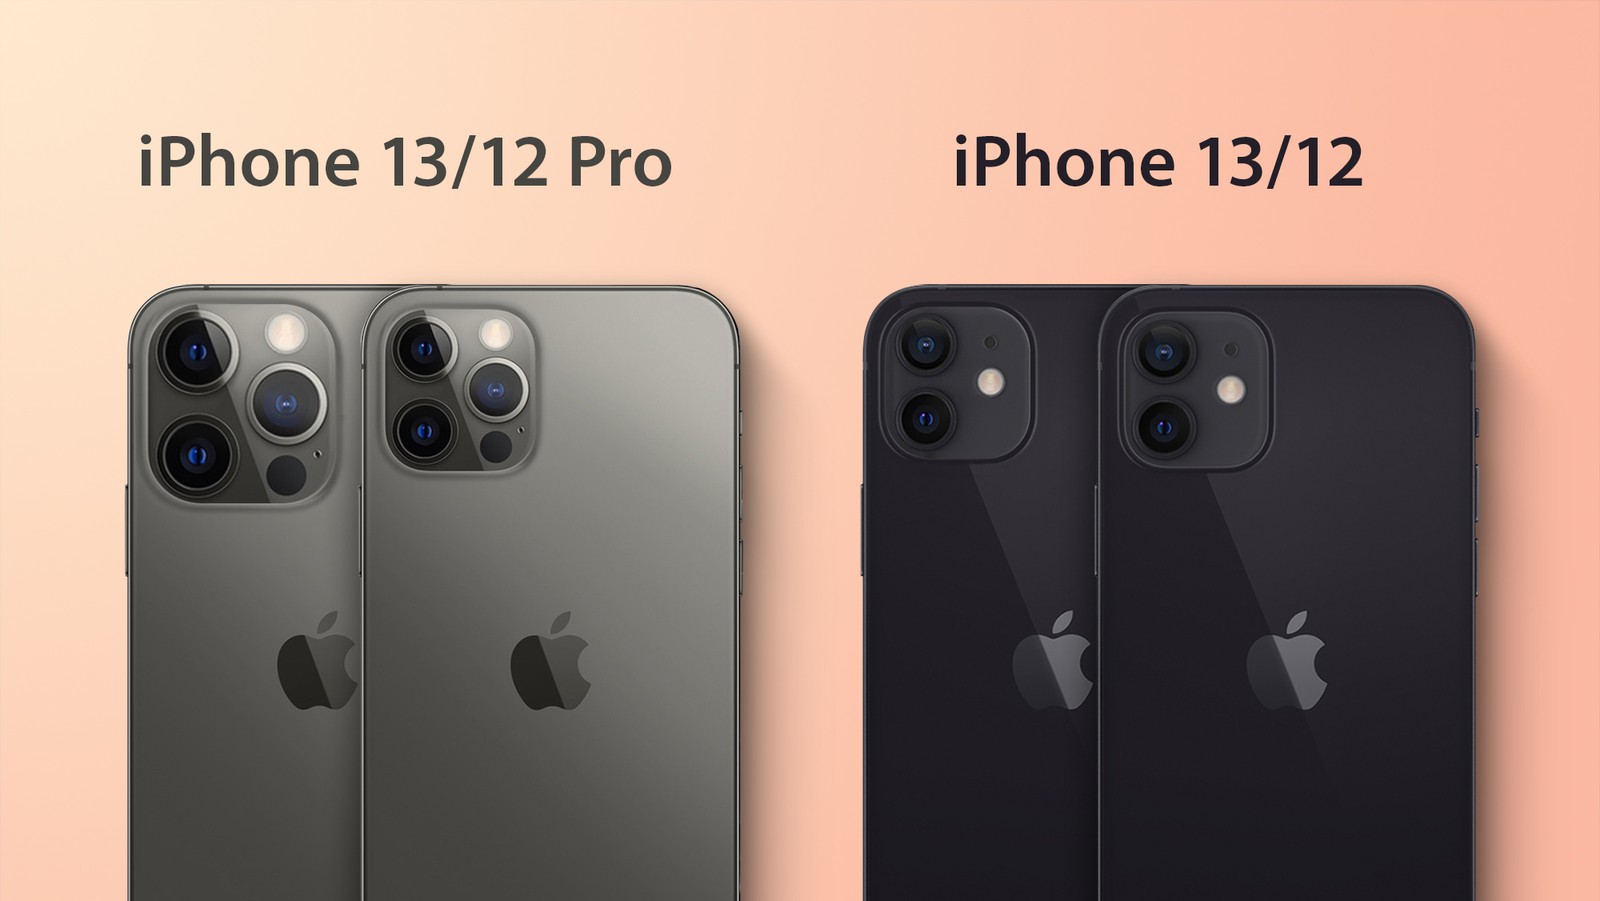 Gli iPhone 13 saranno un po’ più spessi con blocco fotocamere più grande